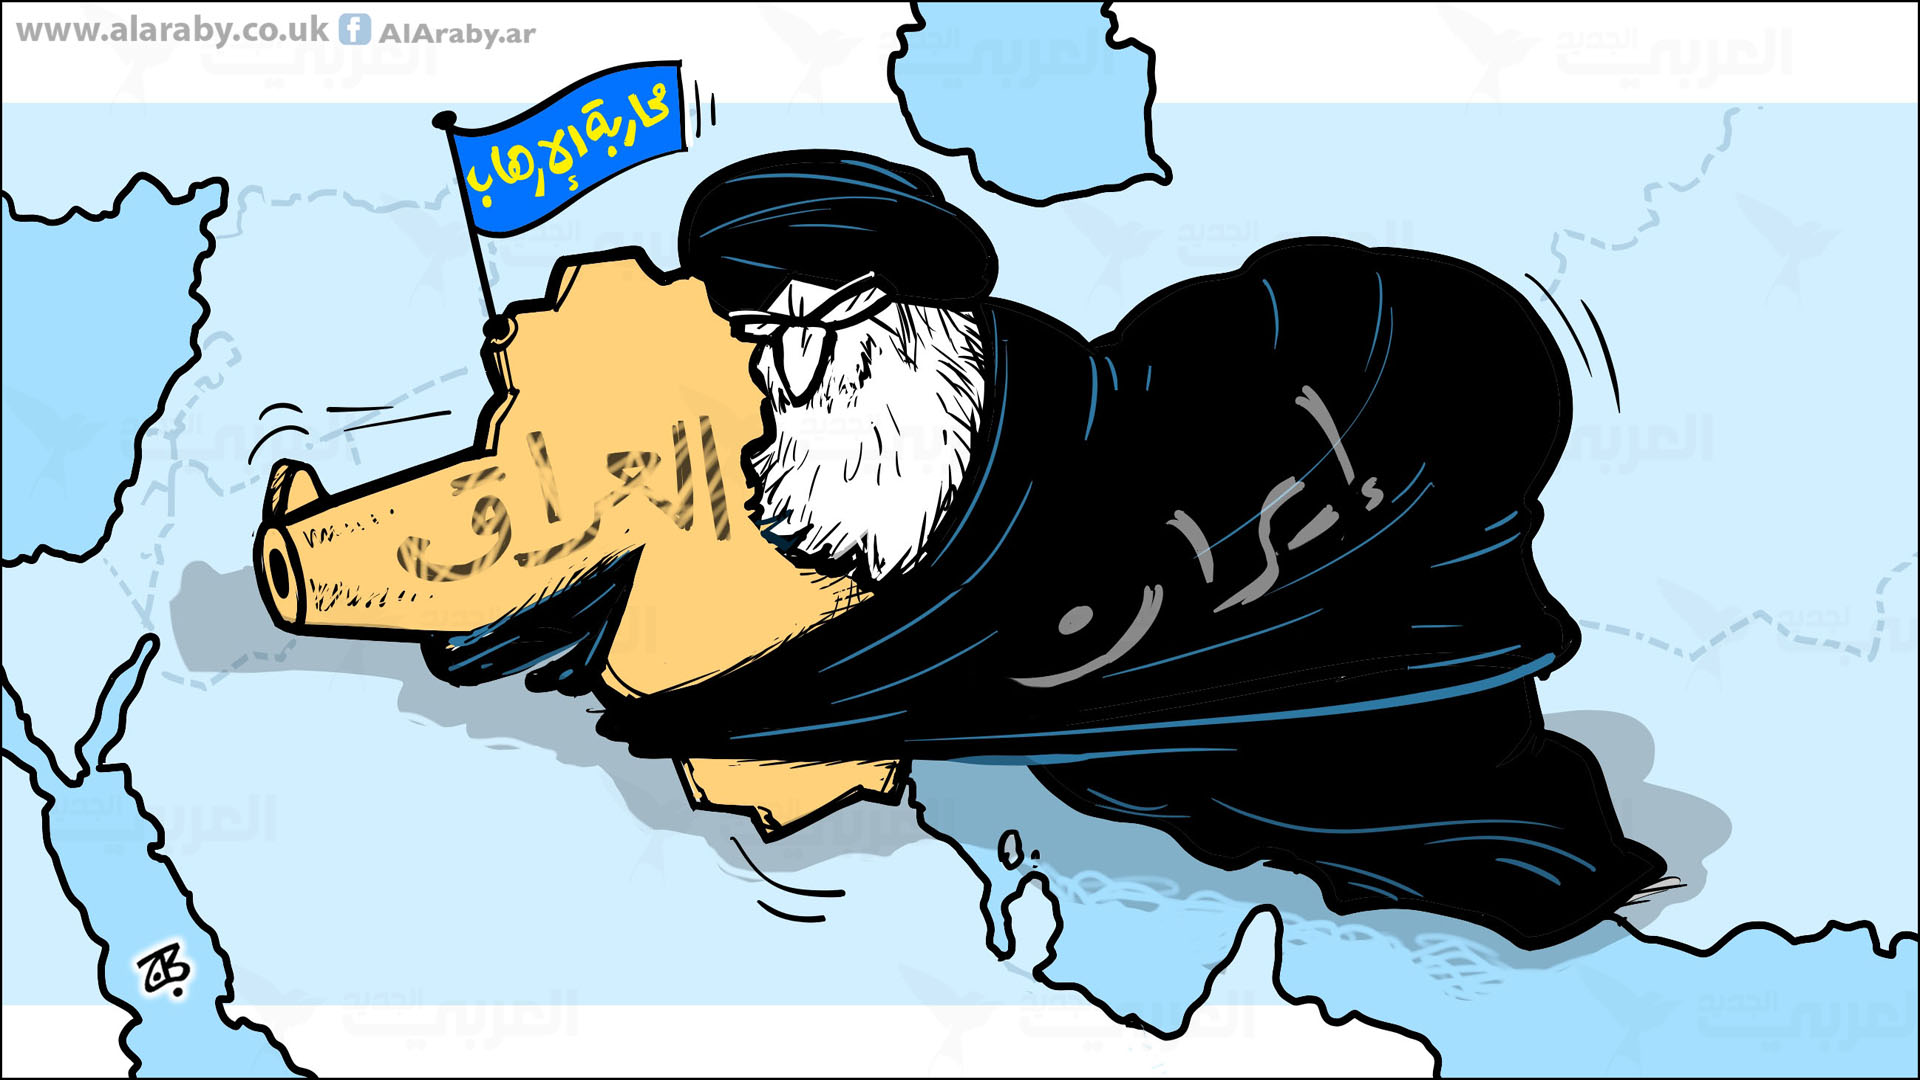 العراق في نظر الإيرانيين إقليم إنتزعه العرب المسلمون من الفرس ؟؟